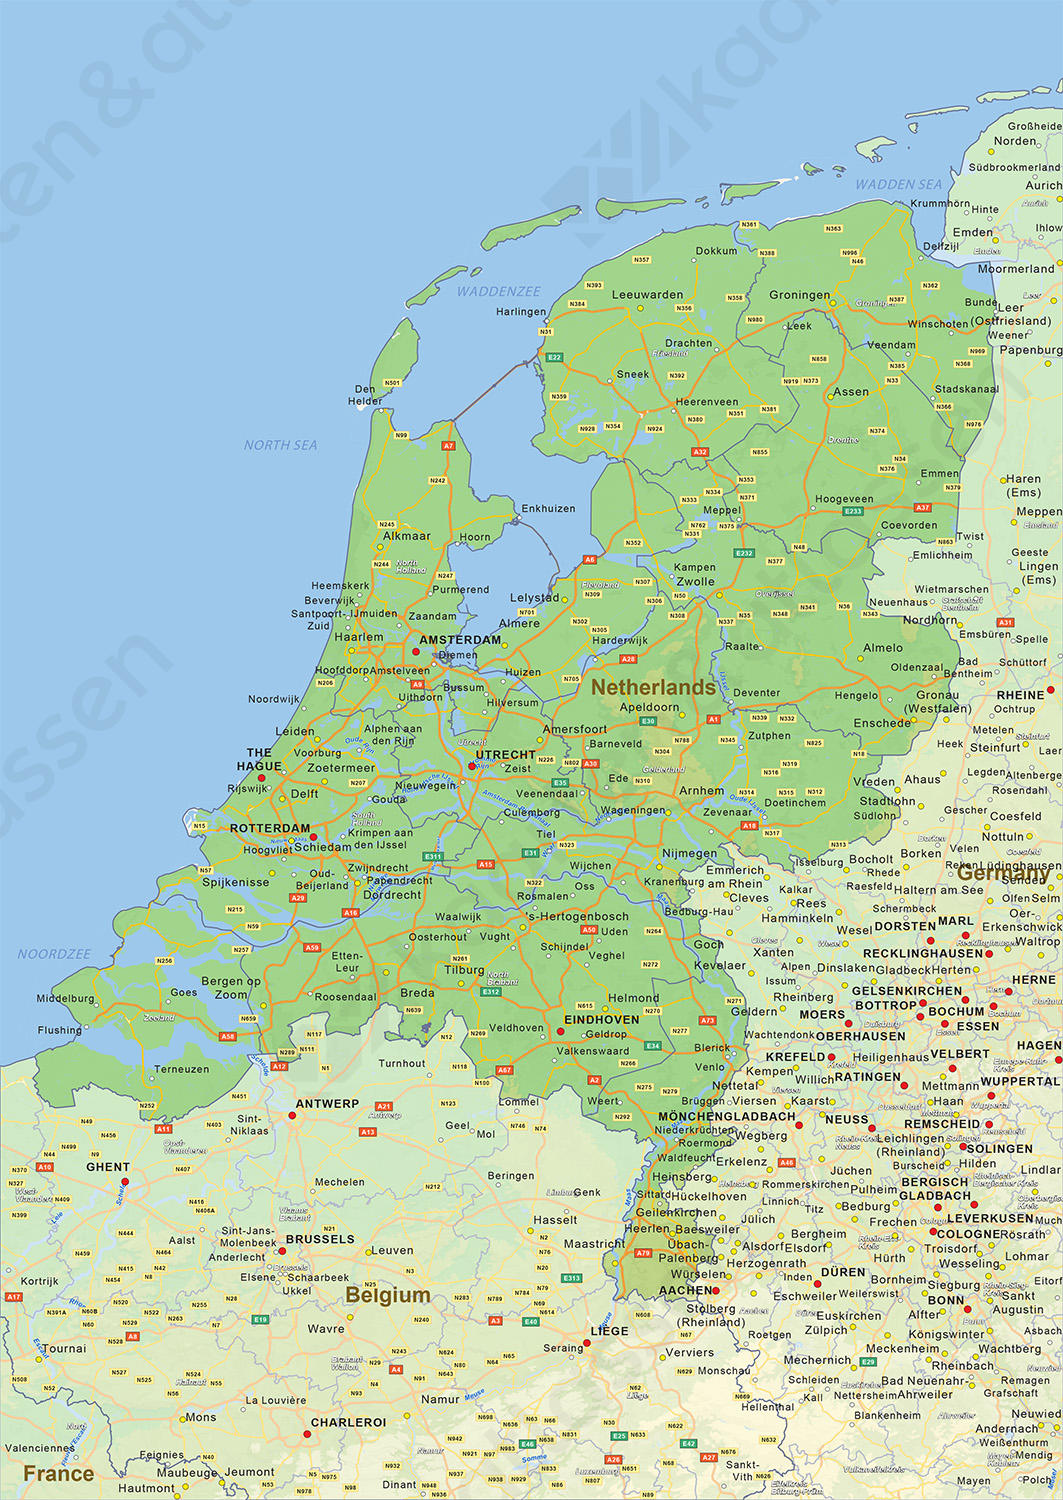 koppeling hout gevaarlijk Digitale Natuurkundige landkaart Nederland 1451 | Kaarten en Atlassen.nl